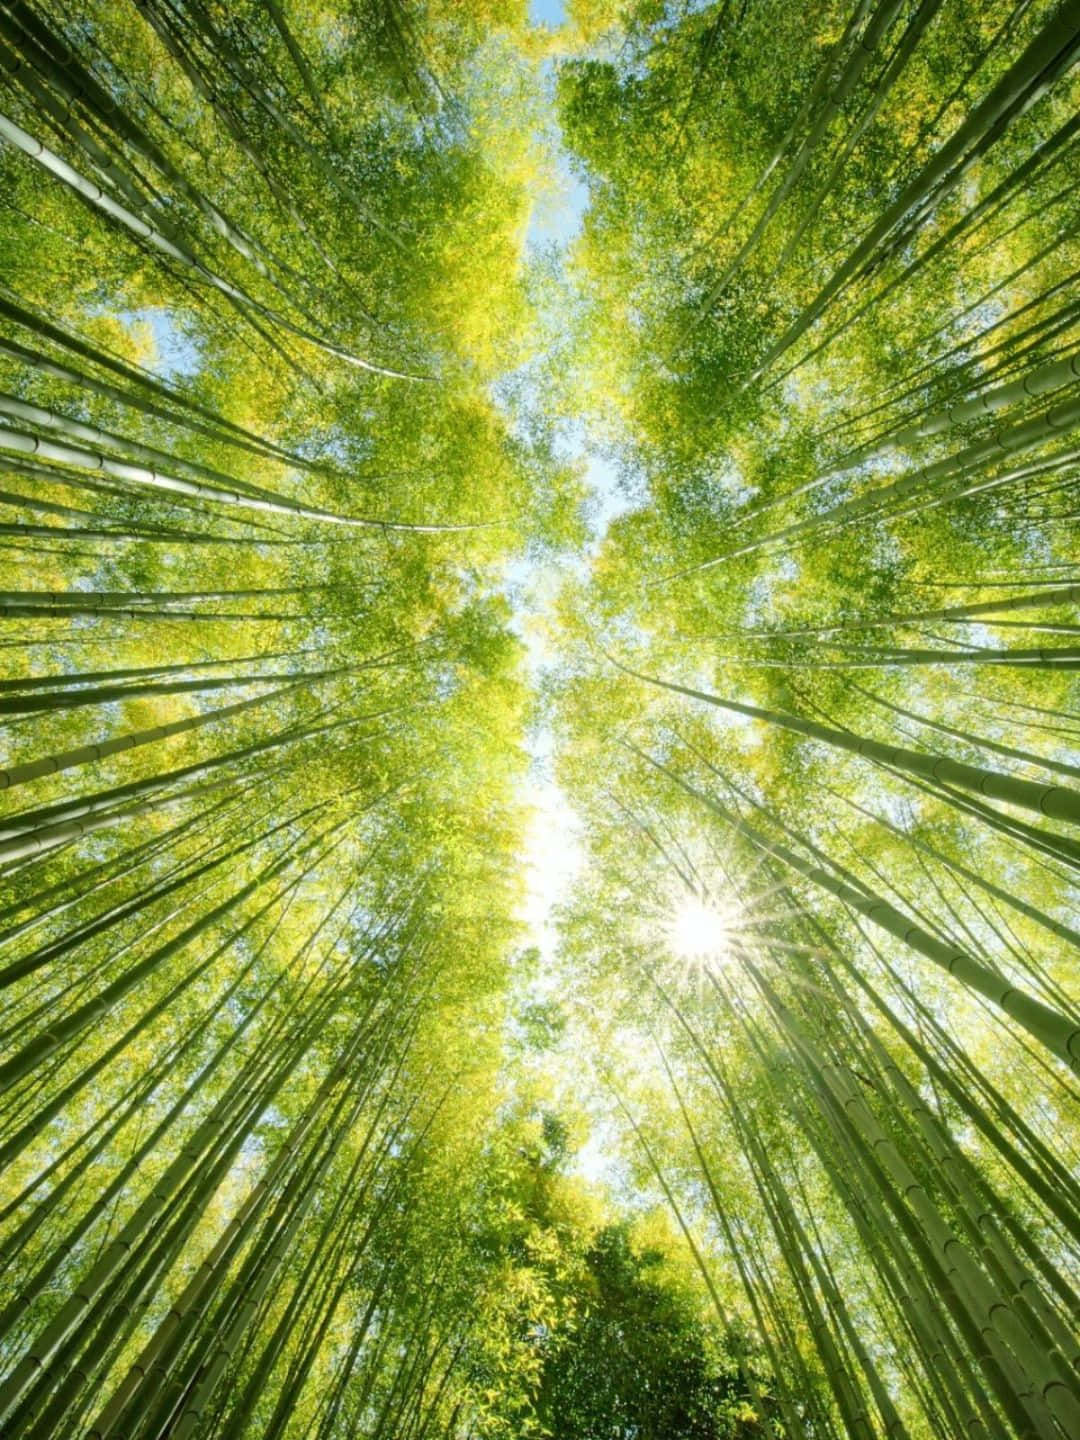 Sfondodi Bambù In Risoluzione 1440p Punto Di Vista Da Sotto In Su.